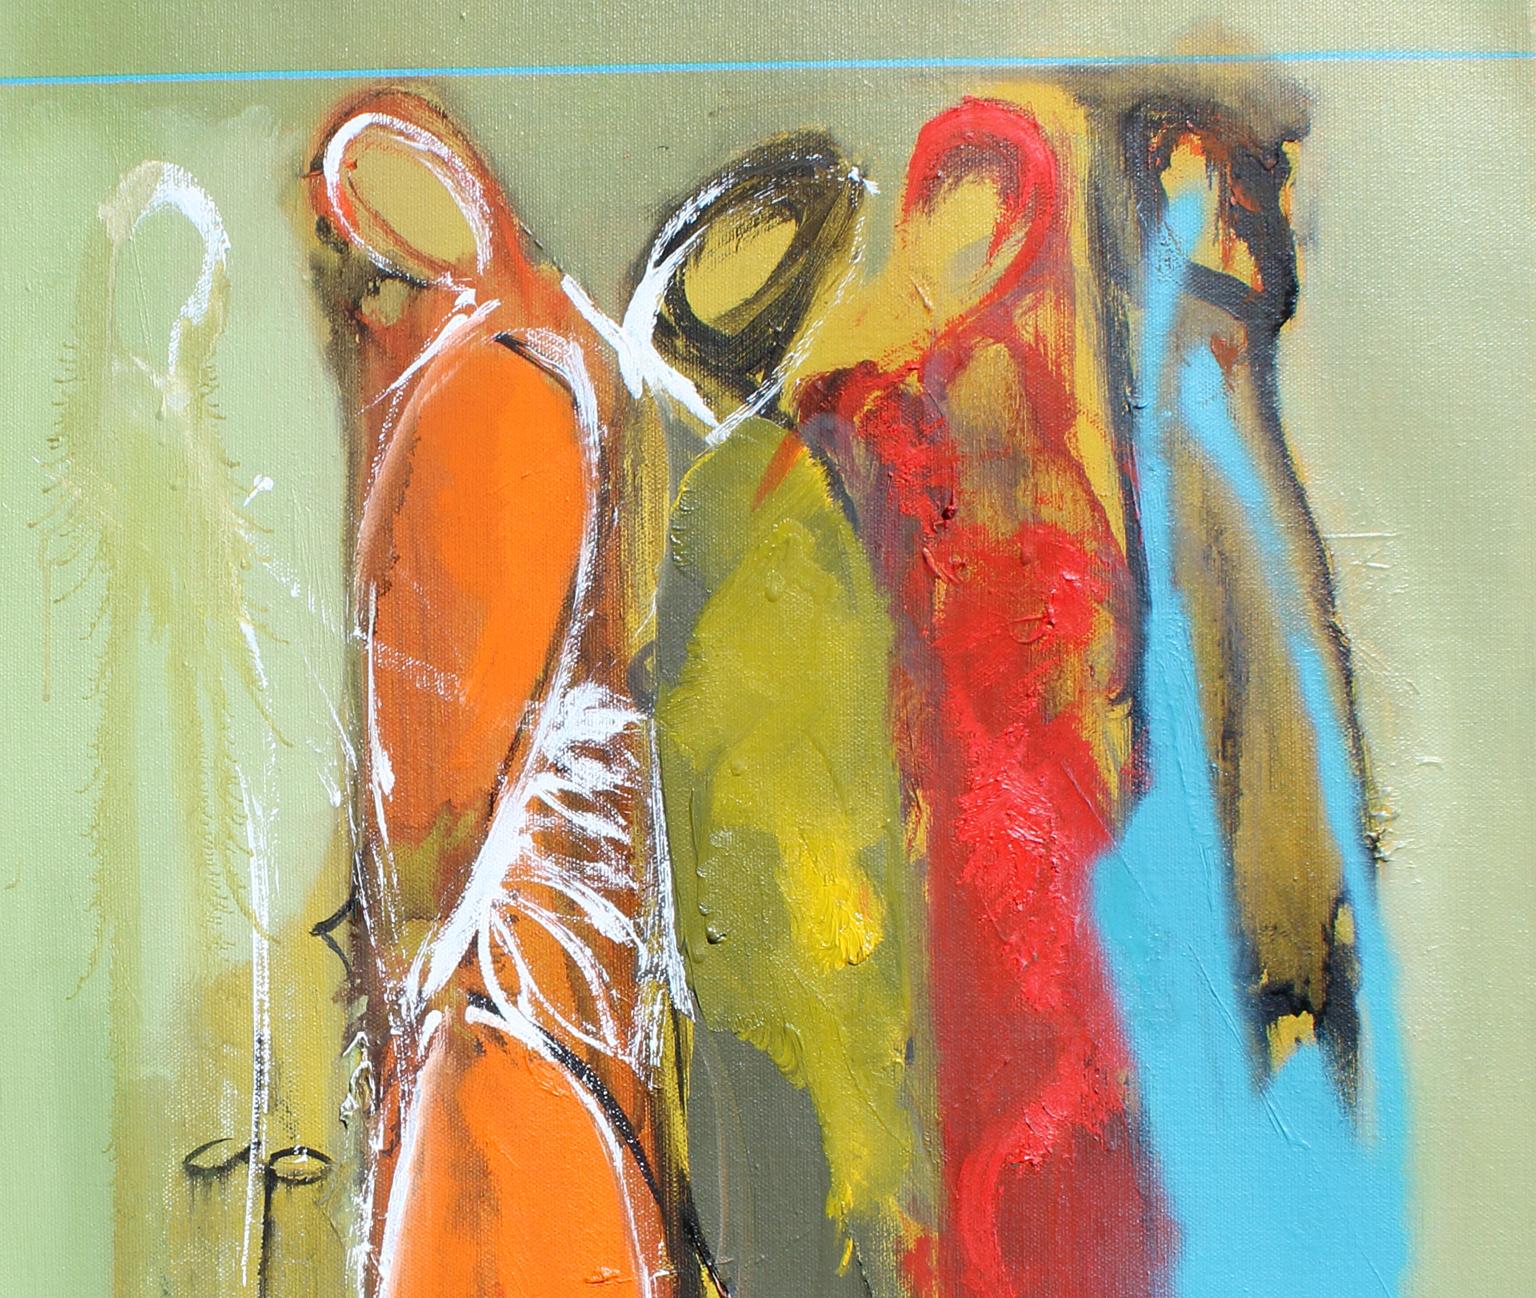 Identität, 20x24 Zoll, Öl auf Leinwand. Erwähnungen des Künstlers  Moderner moderner abstrakter expressionistischer Künstler. – Painting von KOKO HOVAGUIMIAN